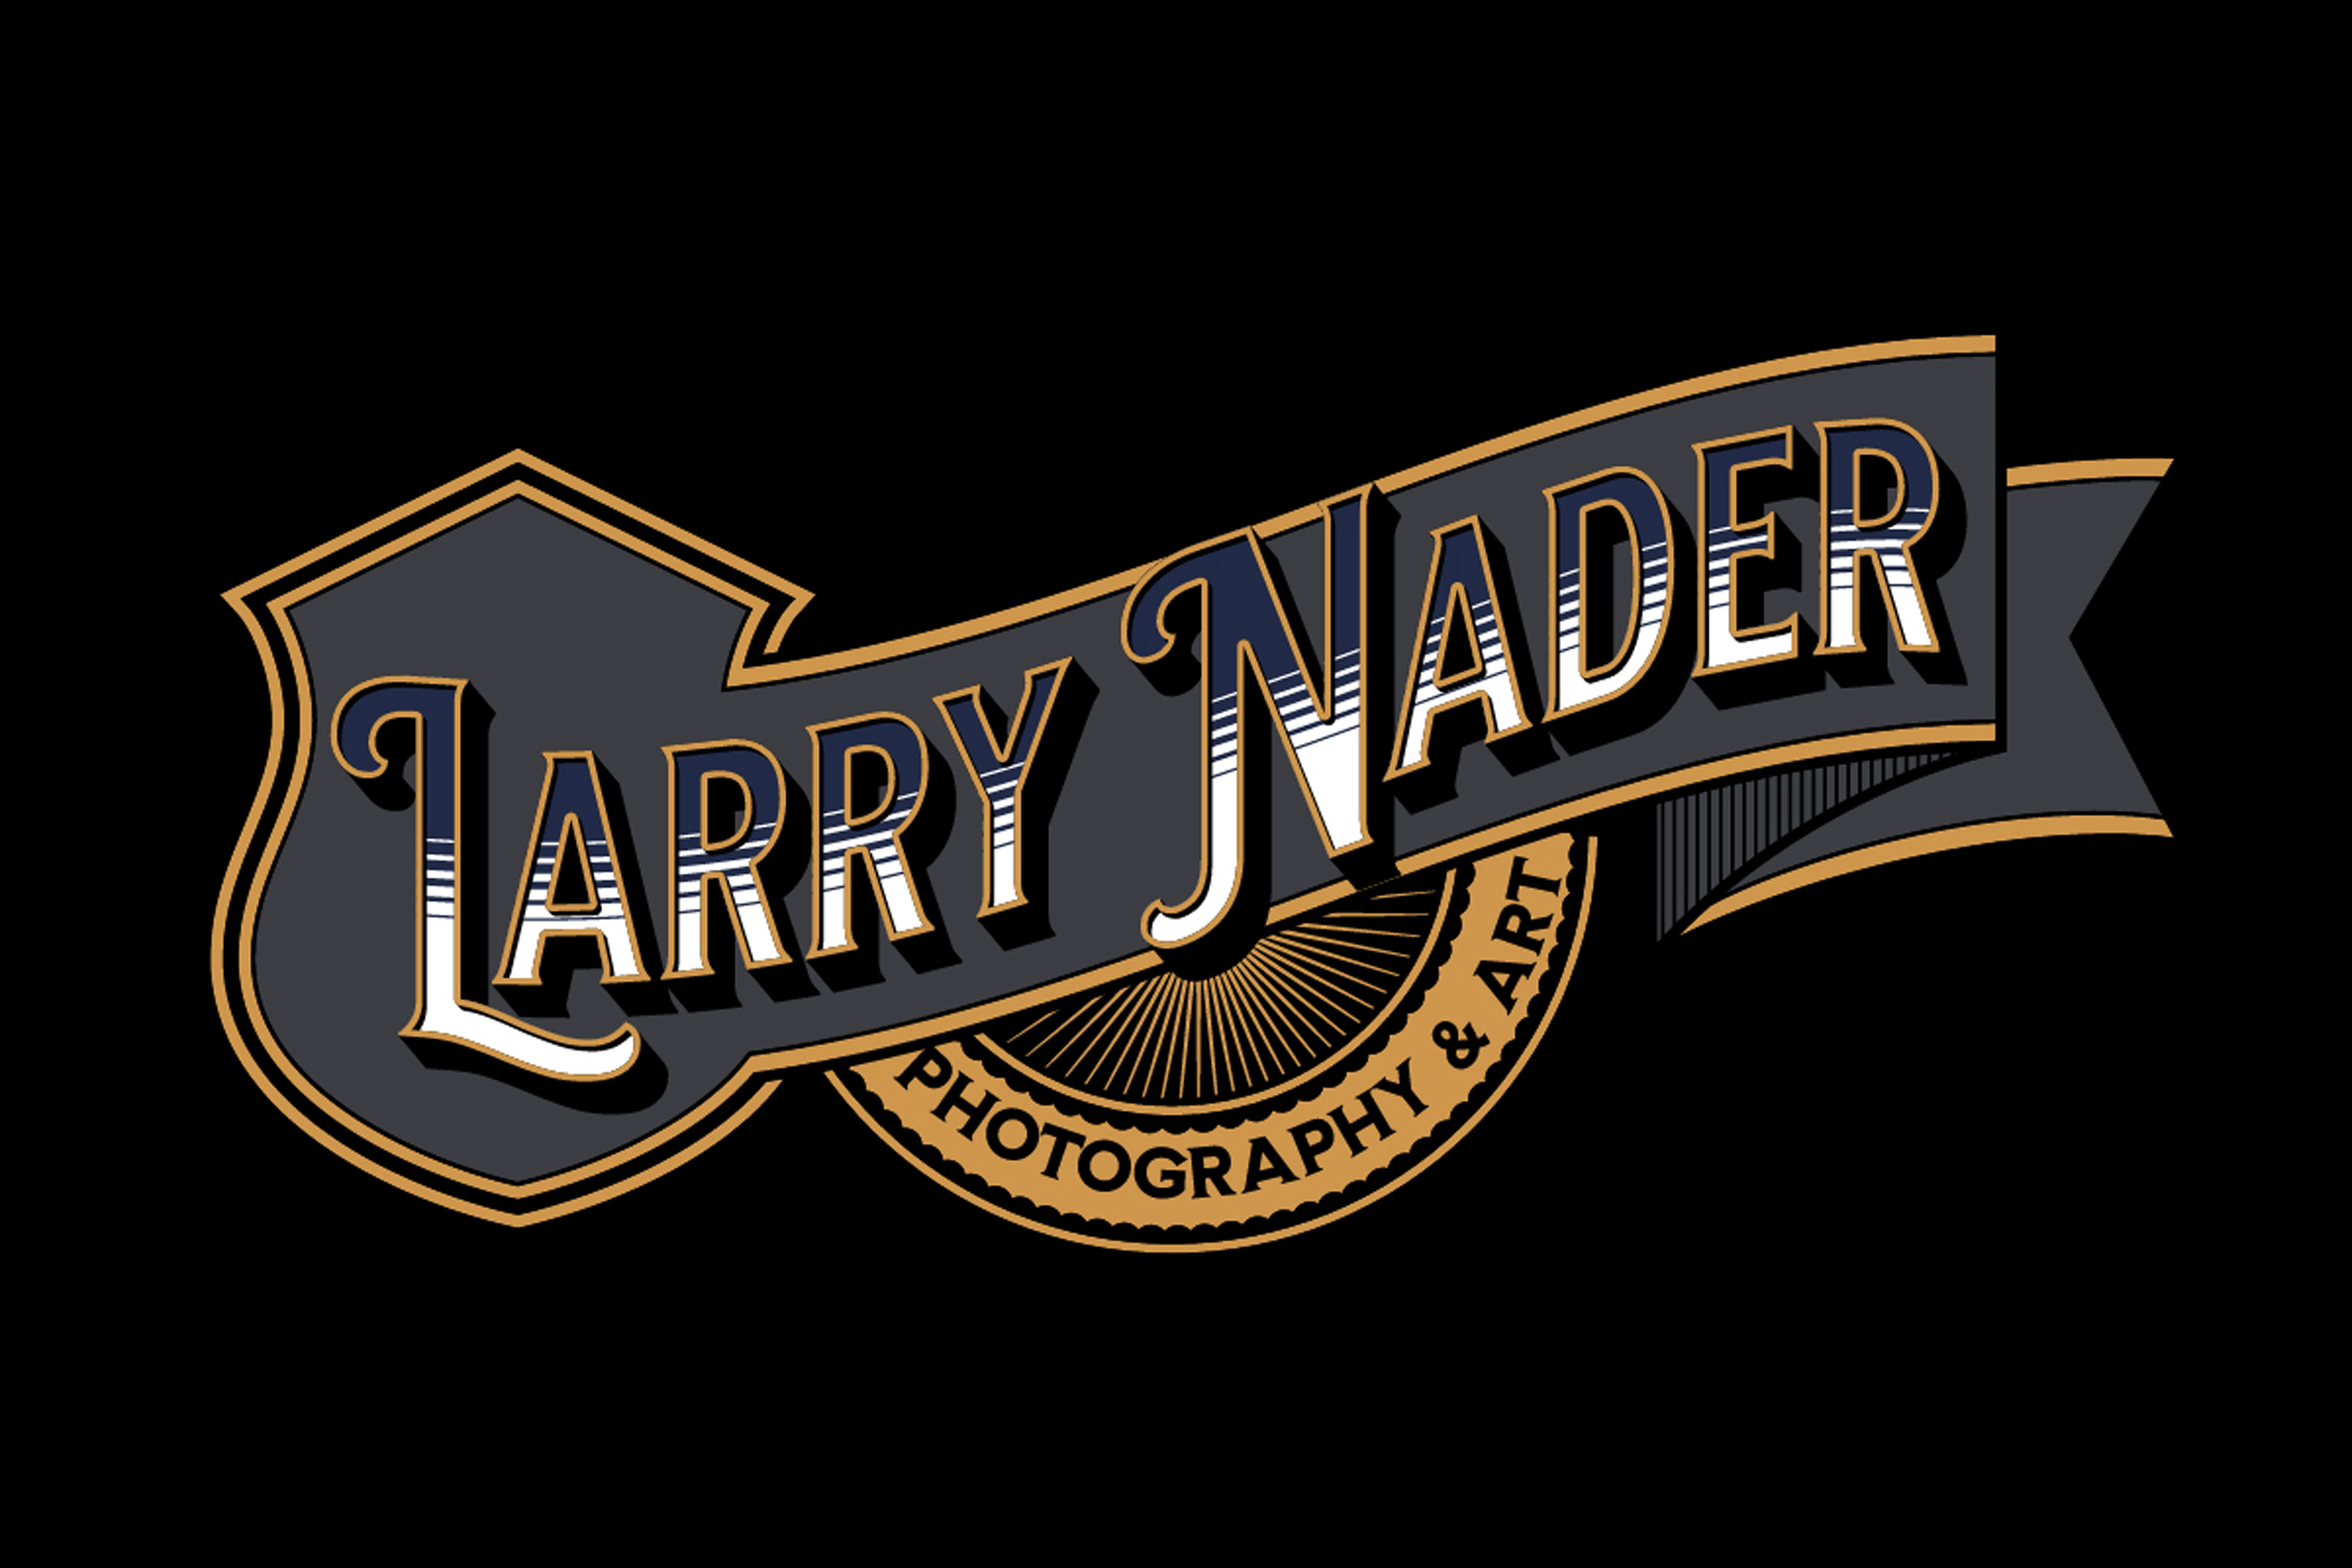 Larry Nader - Website